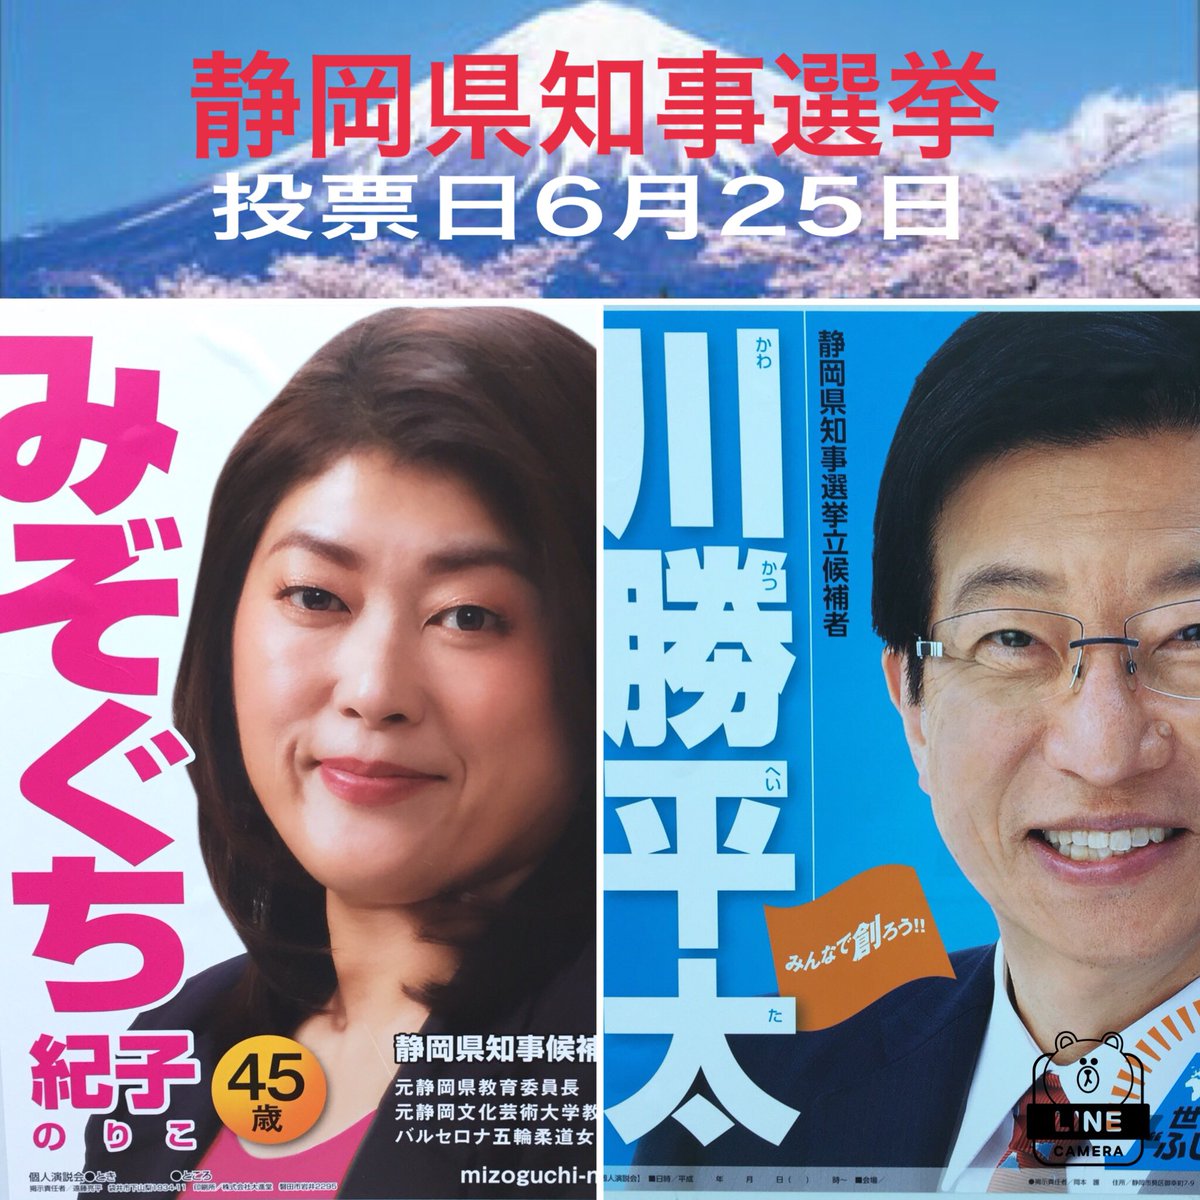 静岡県知事選挙は6月25日です